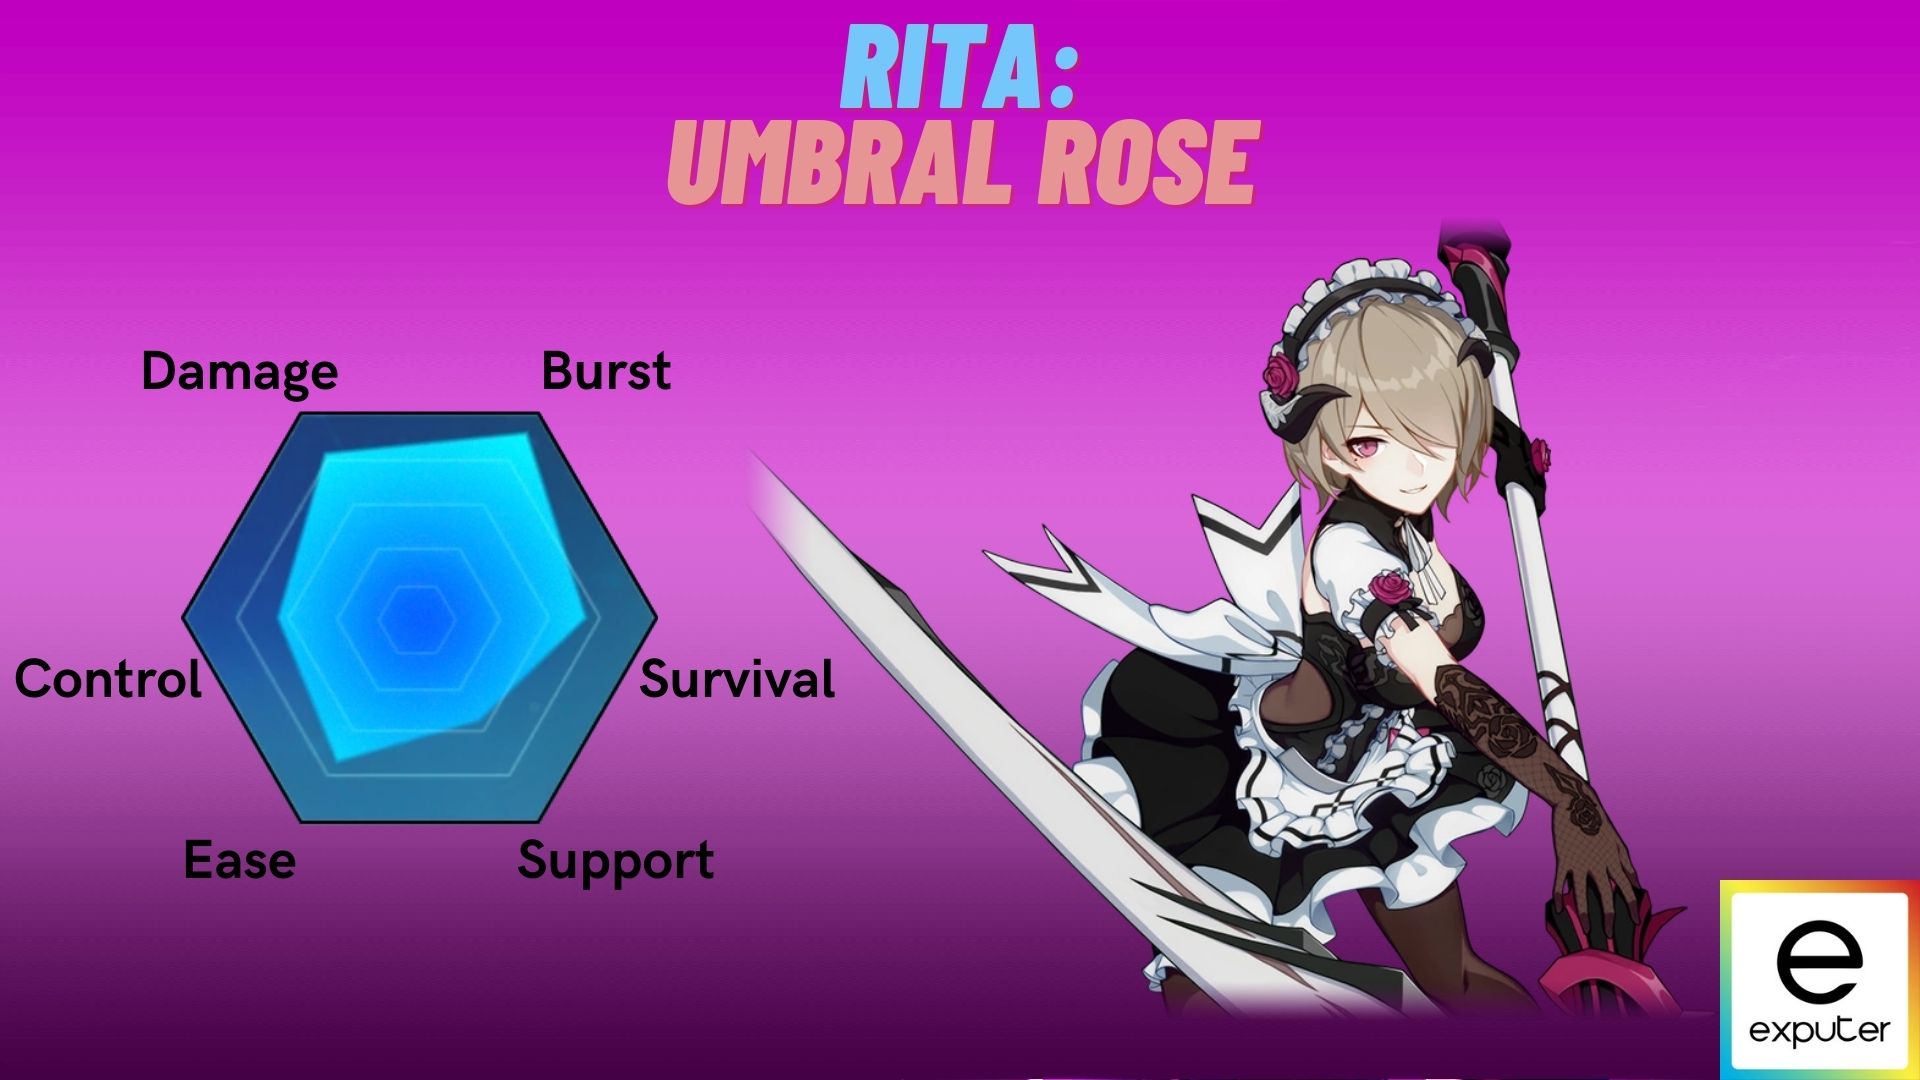 Rita Umbral Rose Battlesuit in Honkai Impact.